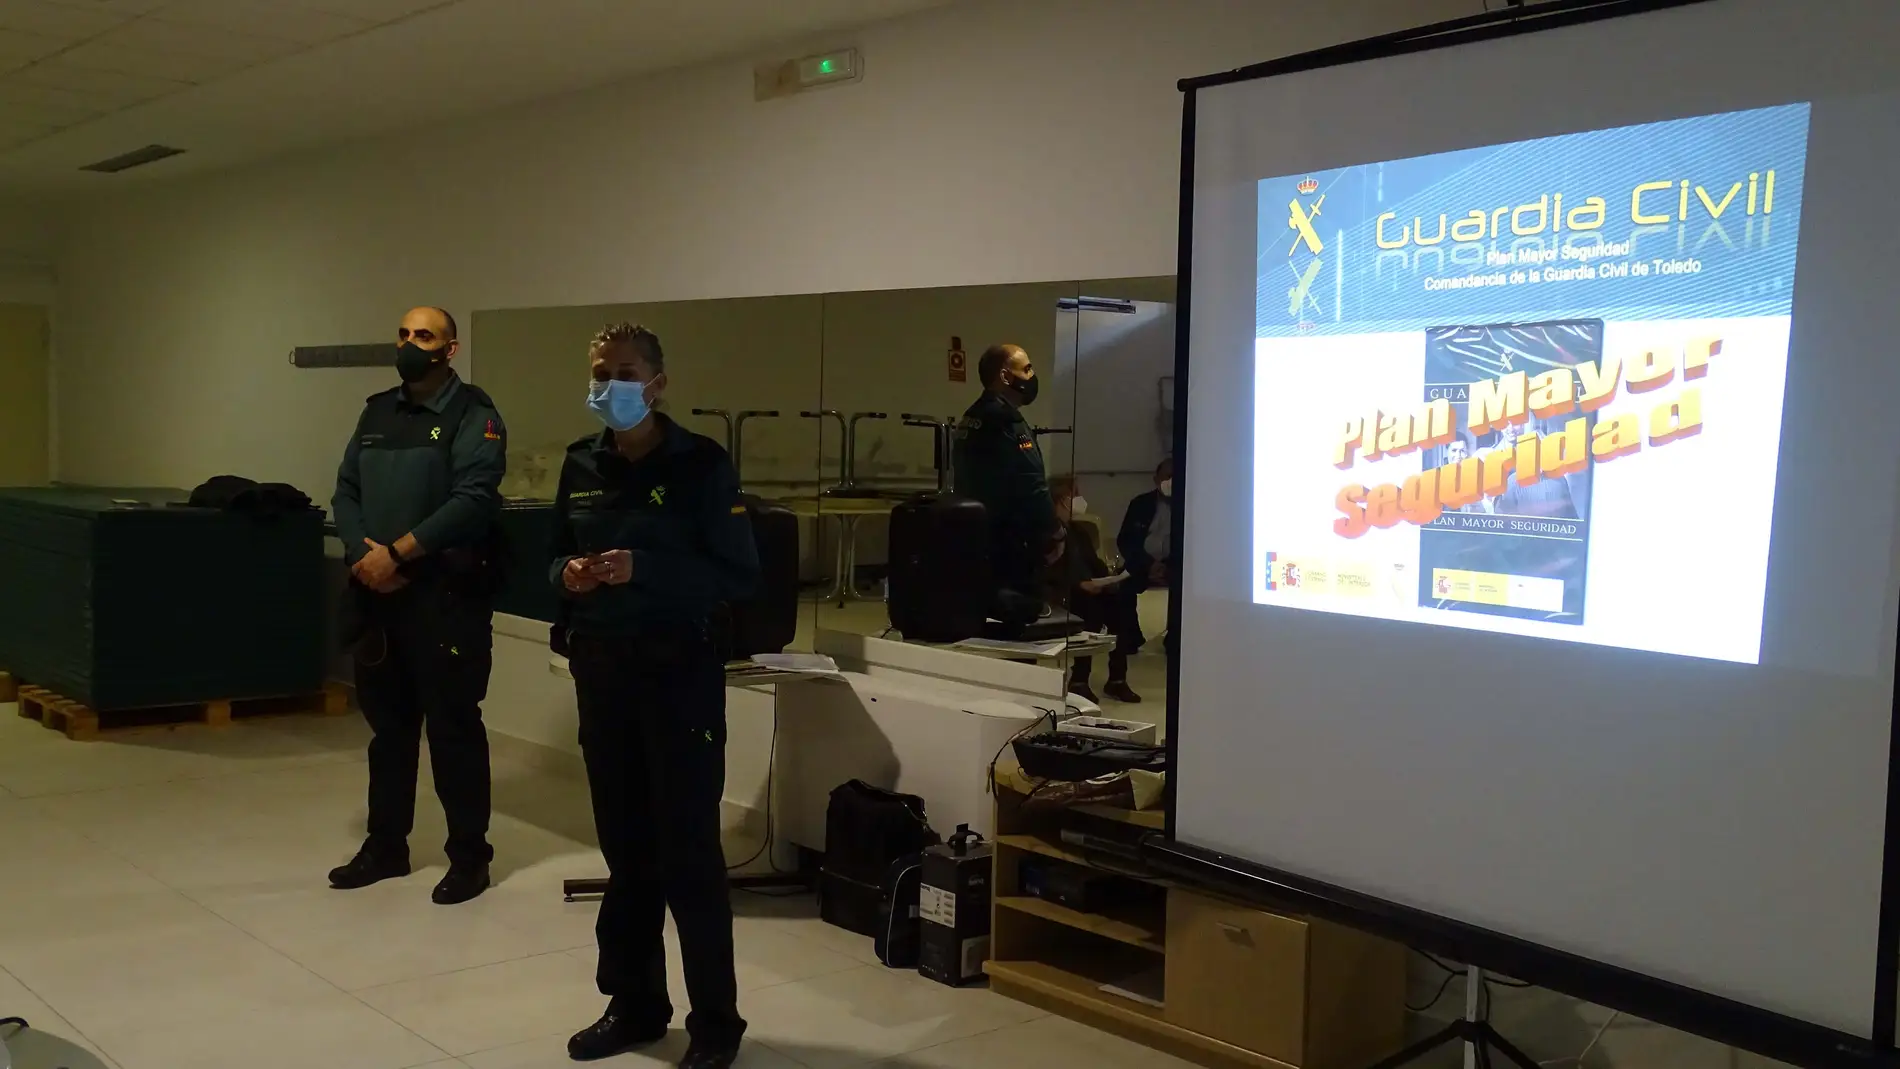 La Guardia Civil ofrece en Quintanar una charla sobre prevención de robos, timos y estafas